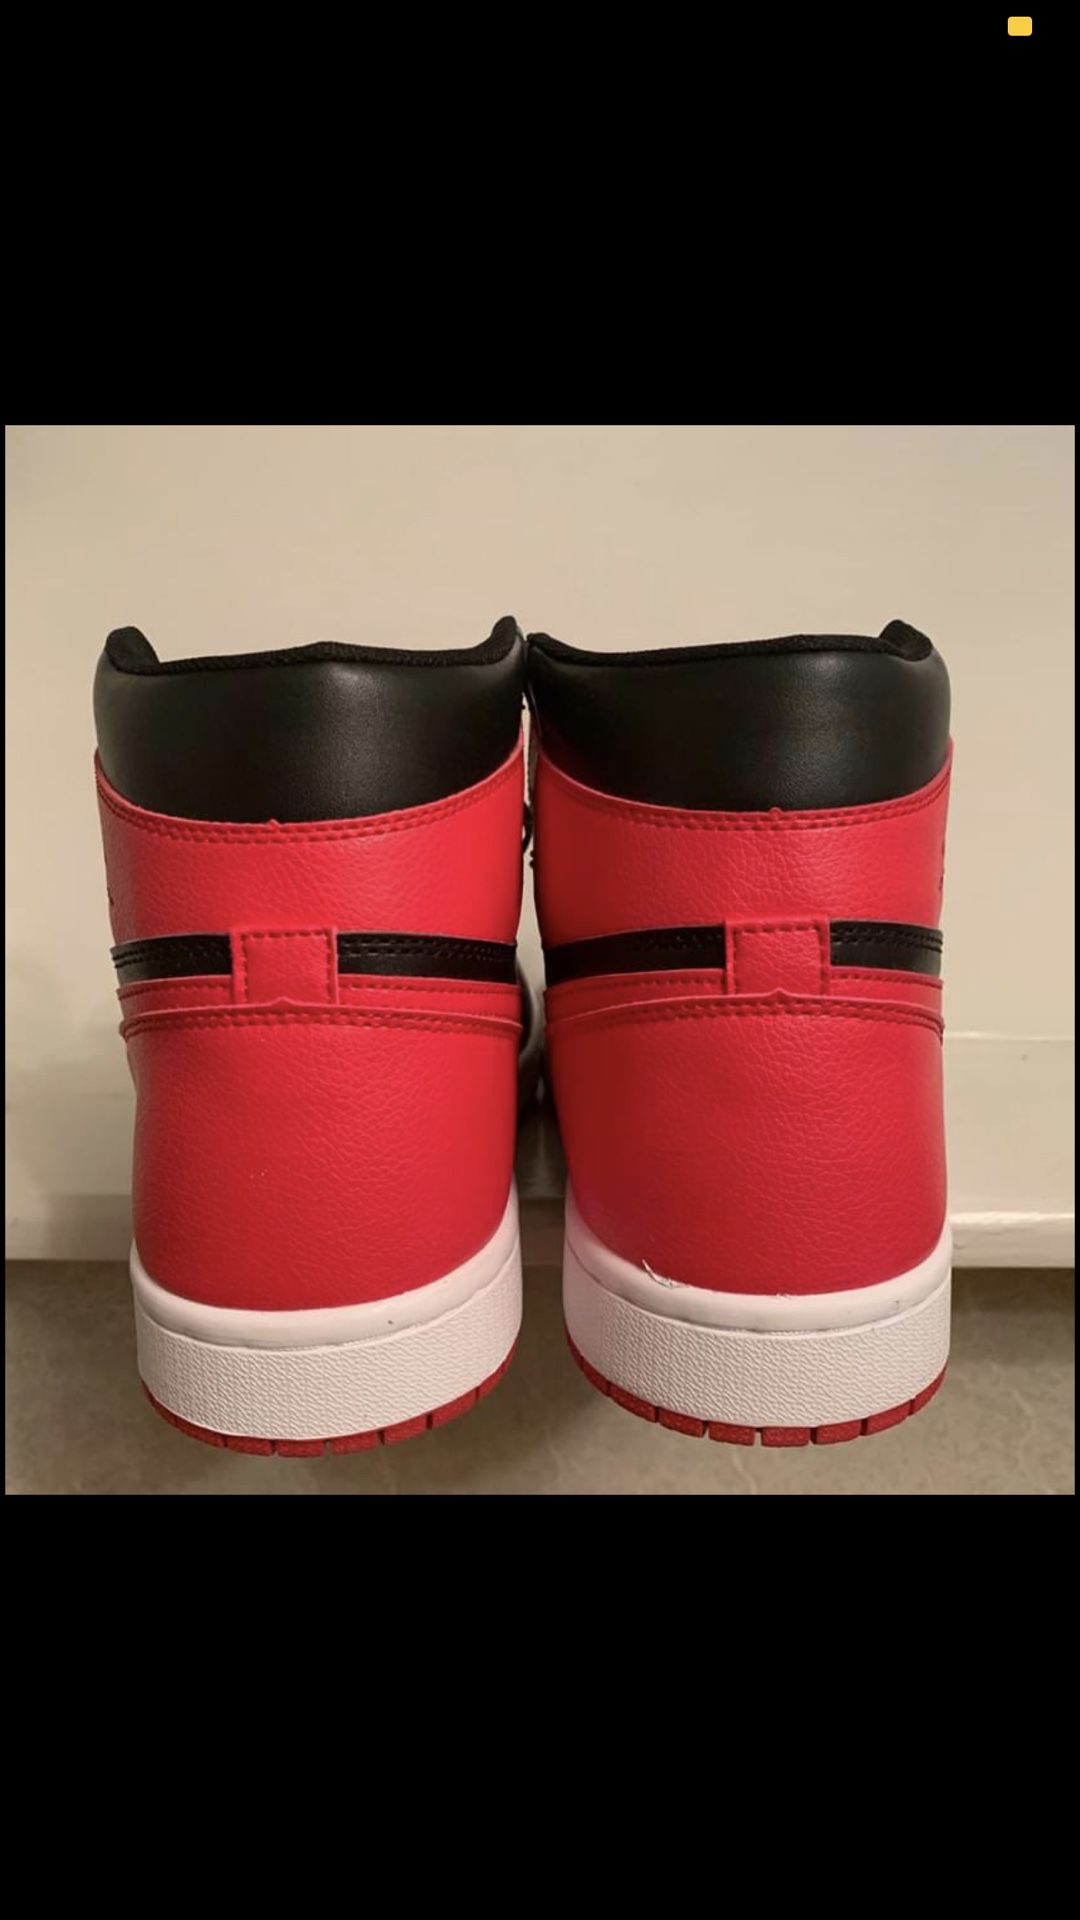 Jordan 1 Retro High OG Shoes Black/Red Size 11